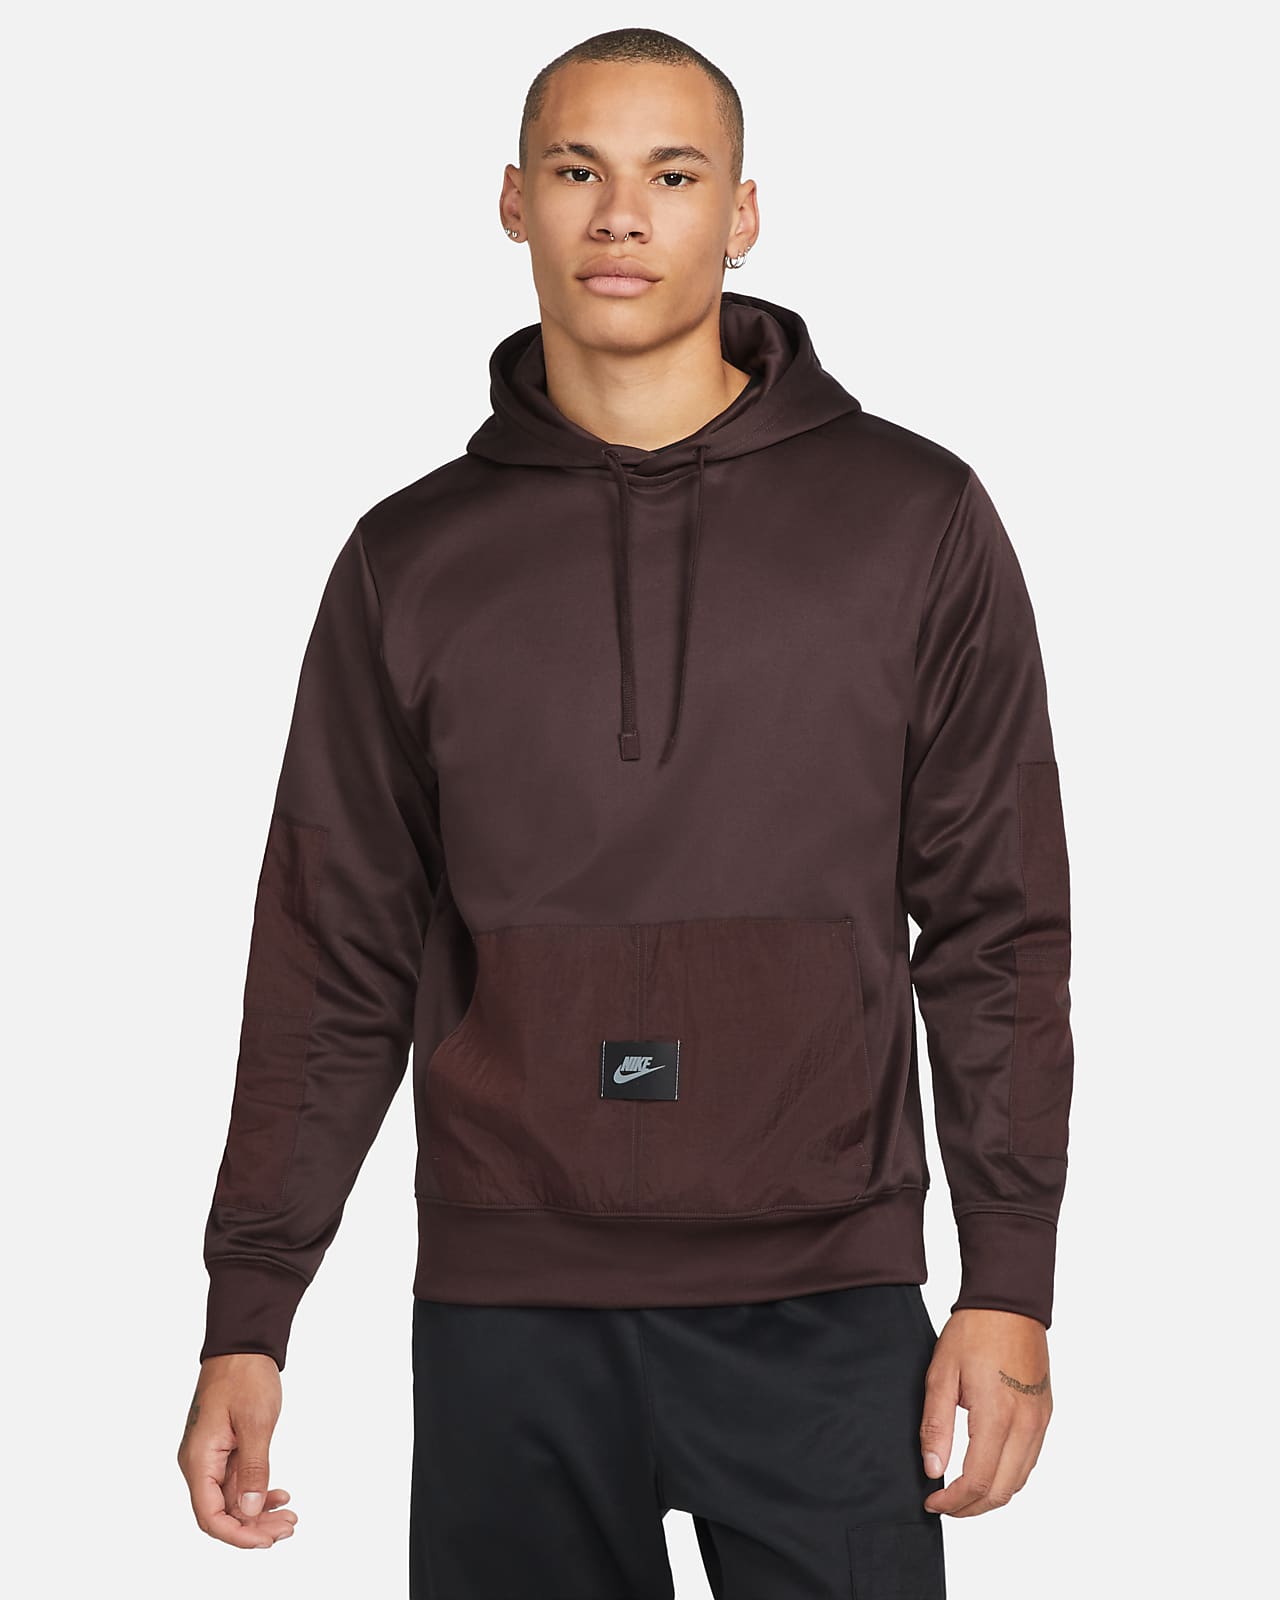 Nike Sportswear Dri-FIT Men's Sports Utility Fleece Pullover Hoodie